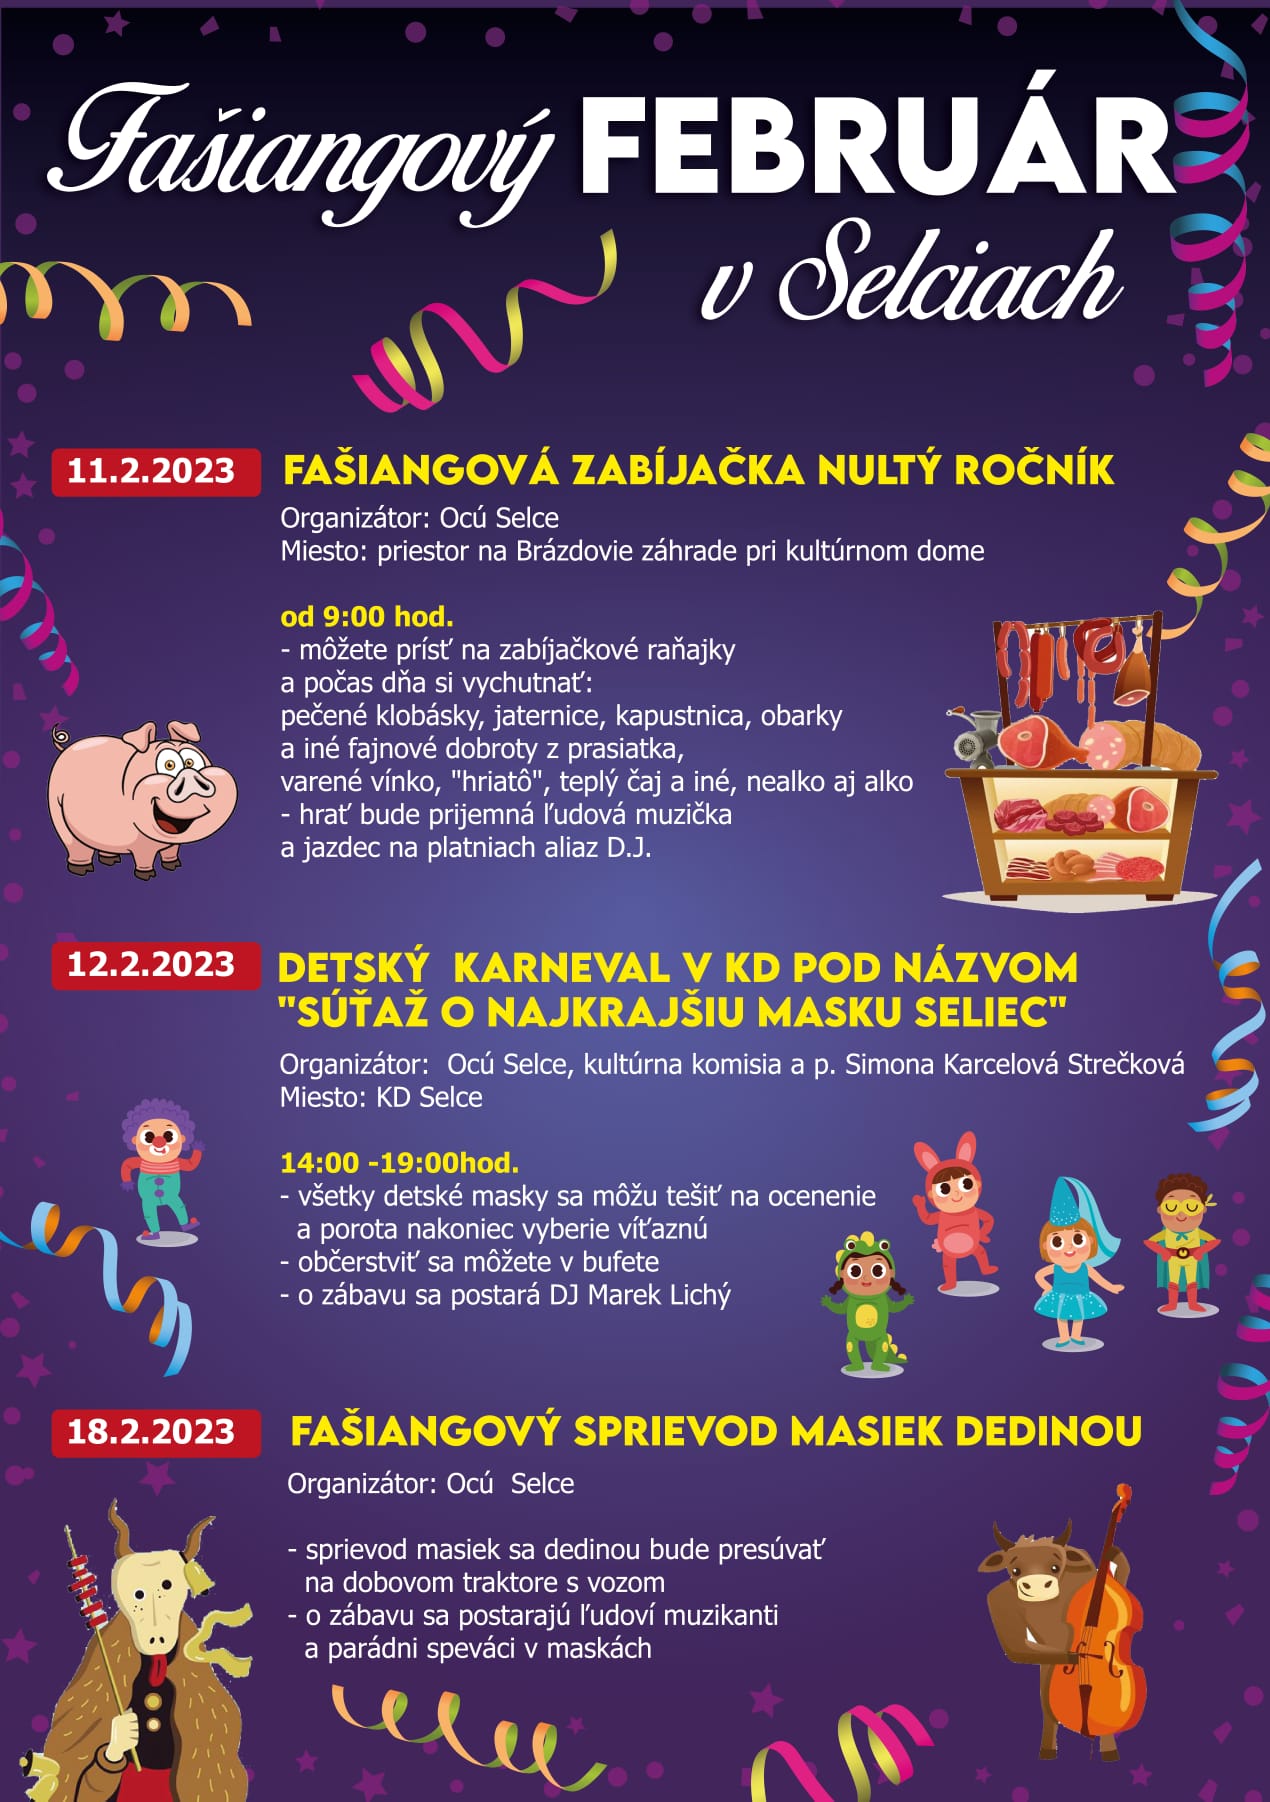 Fašiangový február v Selciach 2023 - fašianová zabíjačka a detský karneval a sprievod masiek dedinou